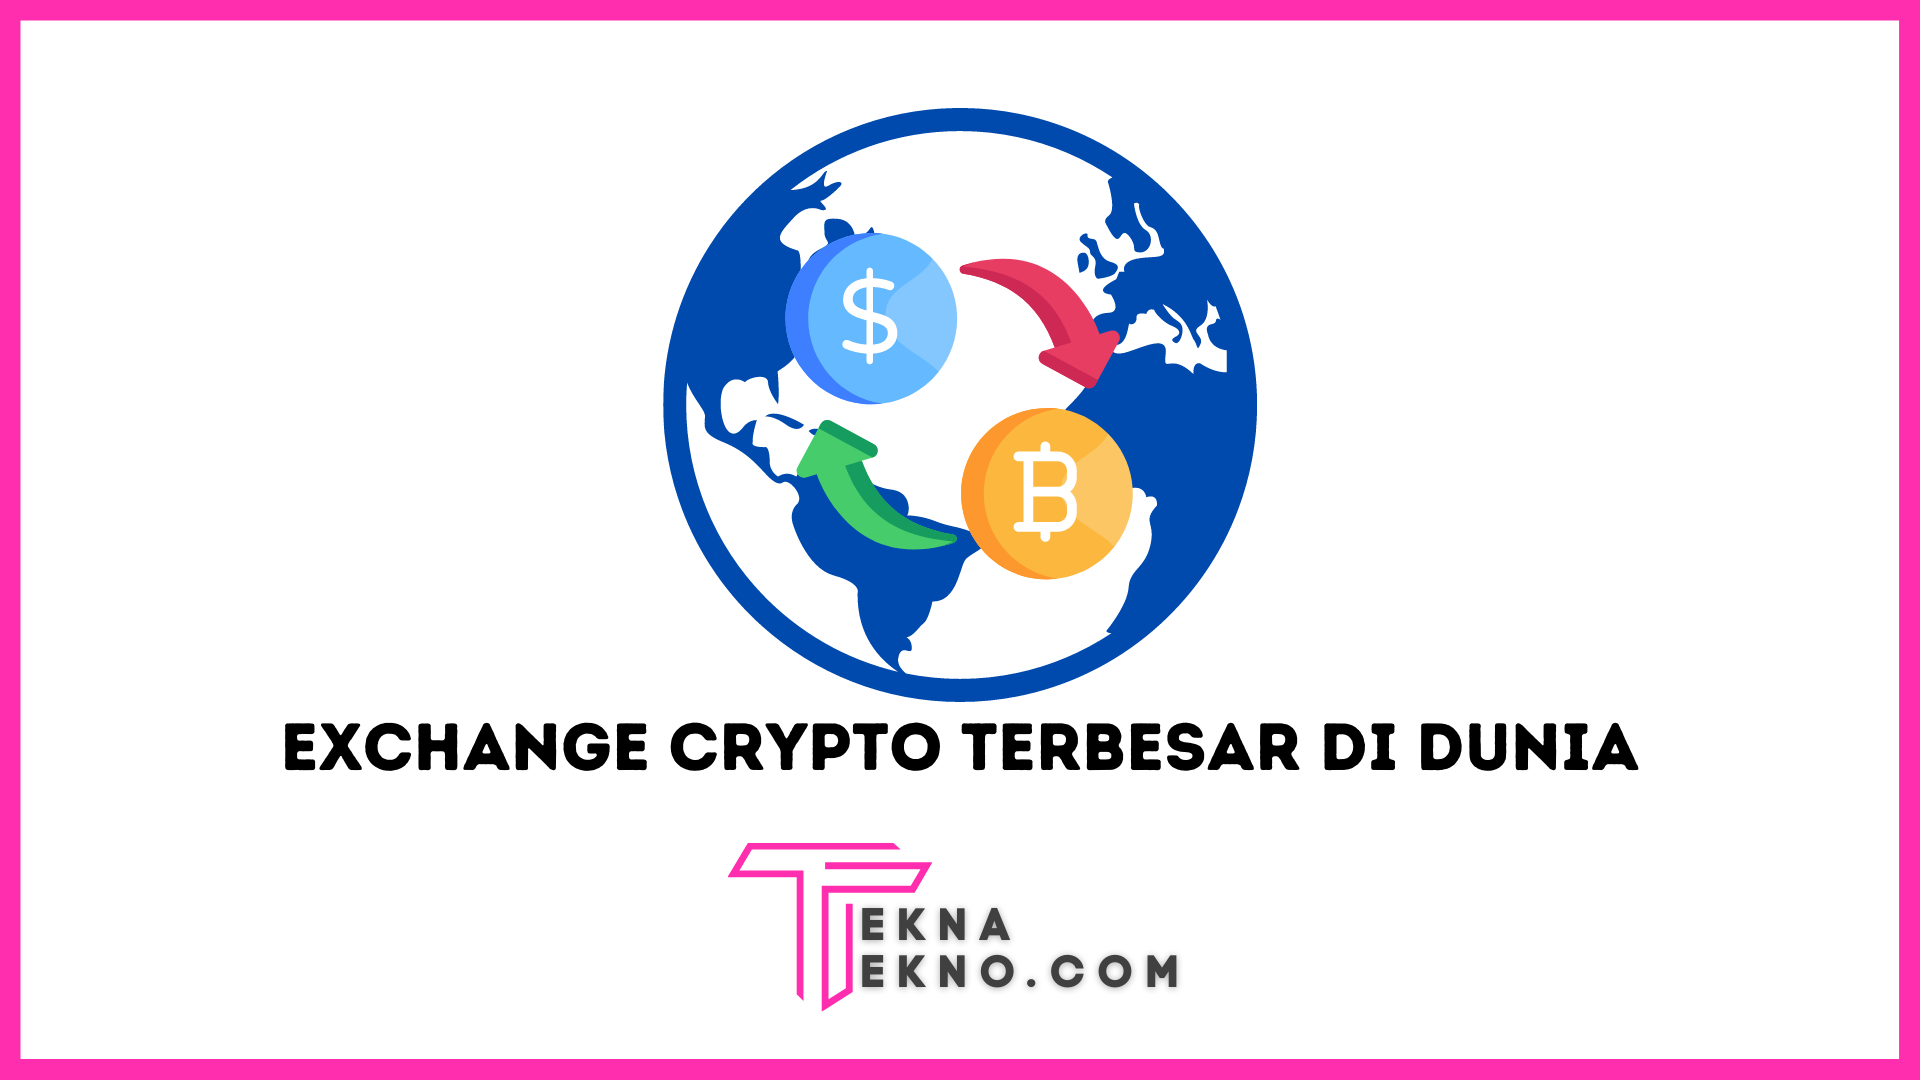 Exchange Crypto Terbesar di Dunia